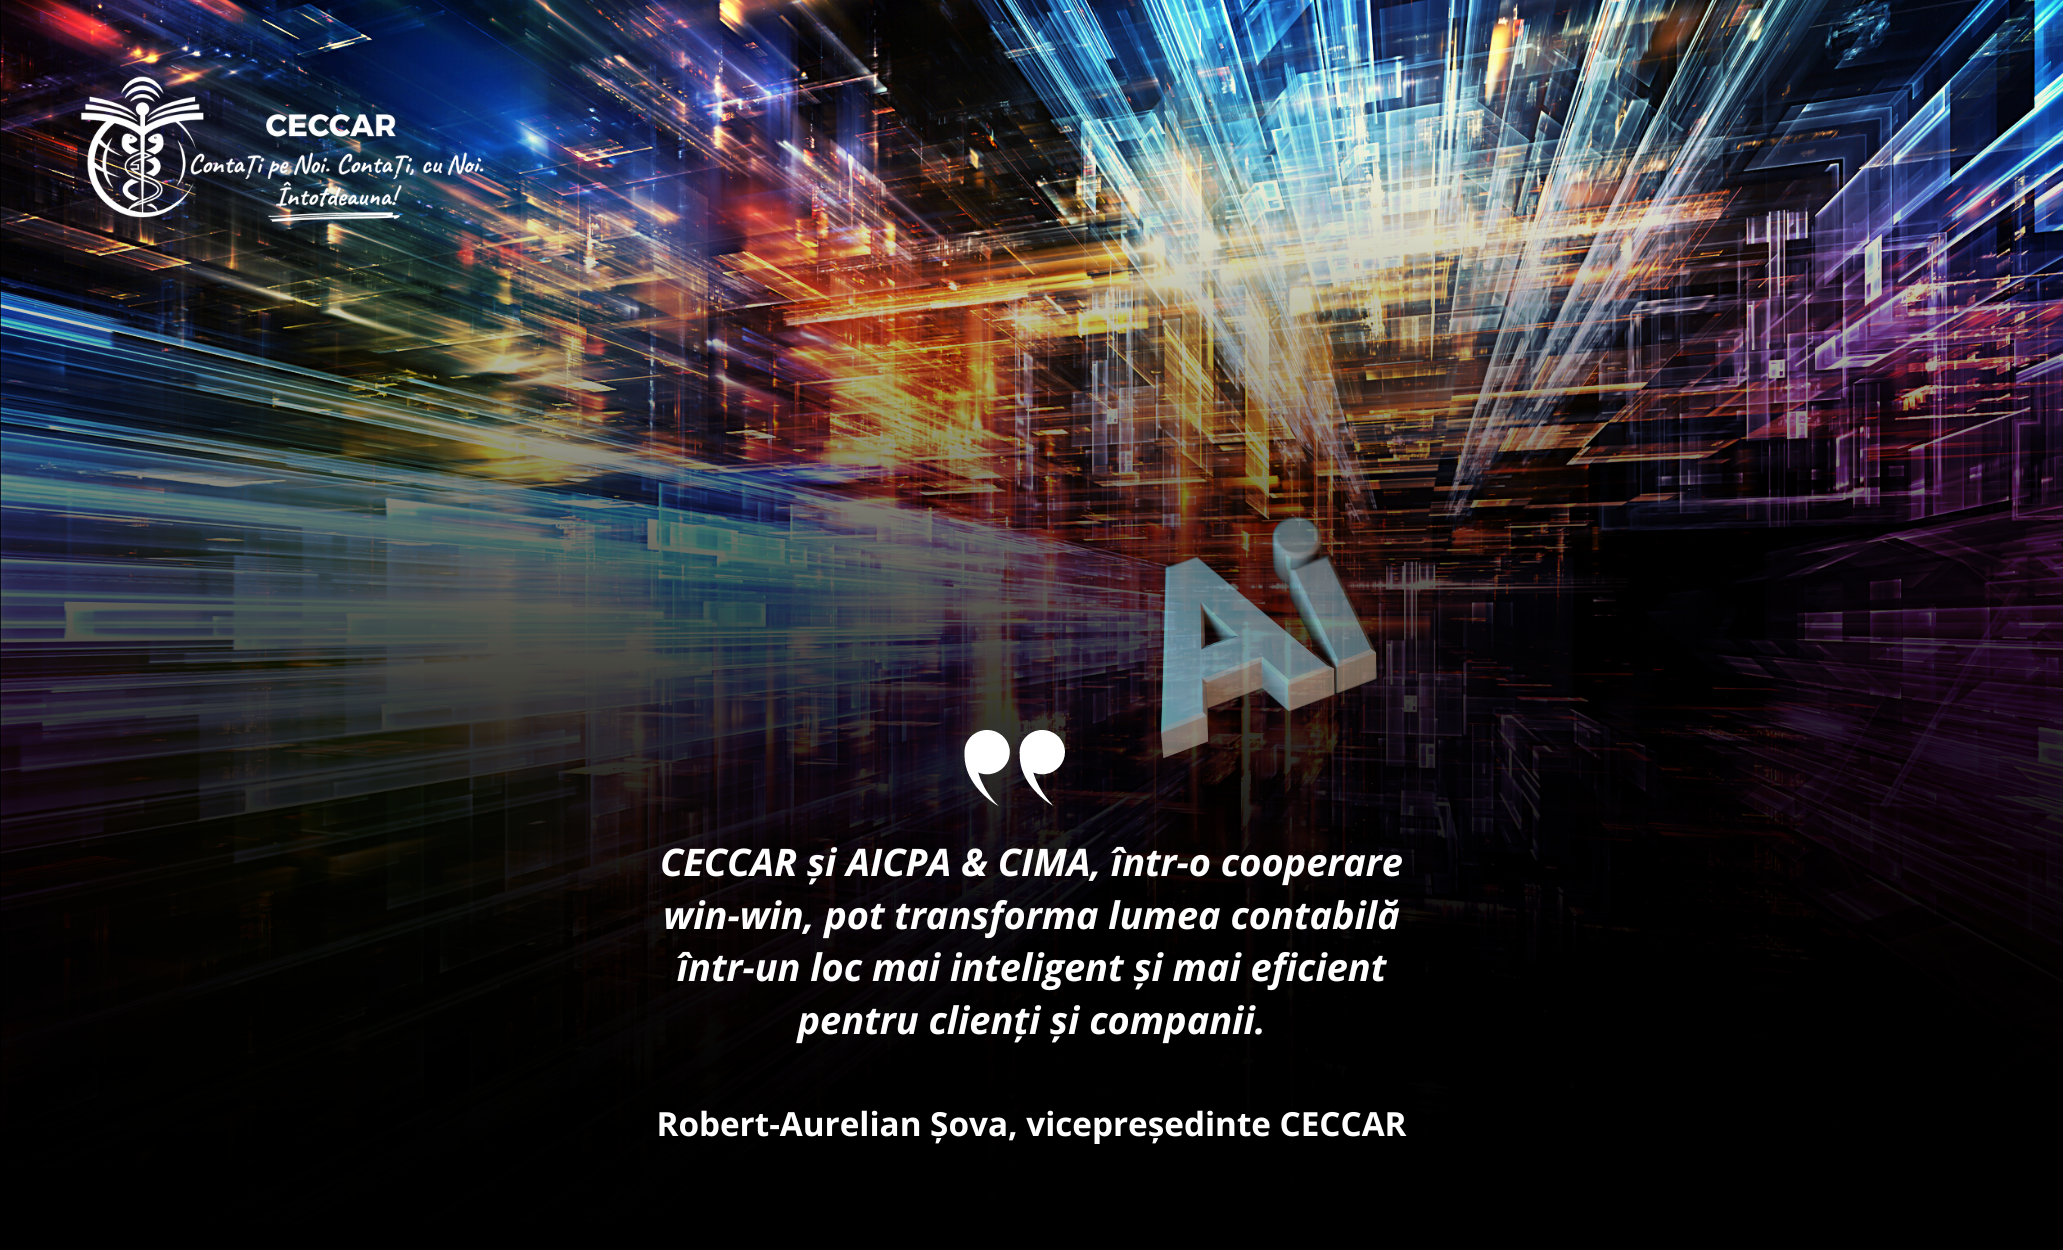 AICPA & CIMA semnează acord de colaborare cu organismul care conduce profesia contabilă din România – CECCAR